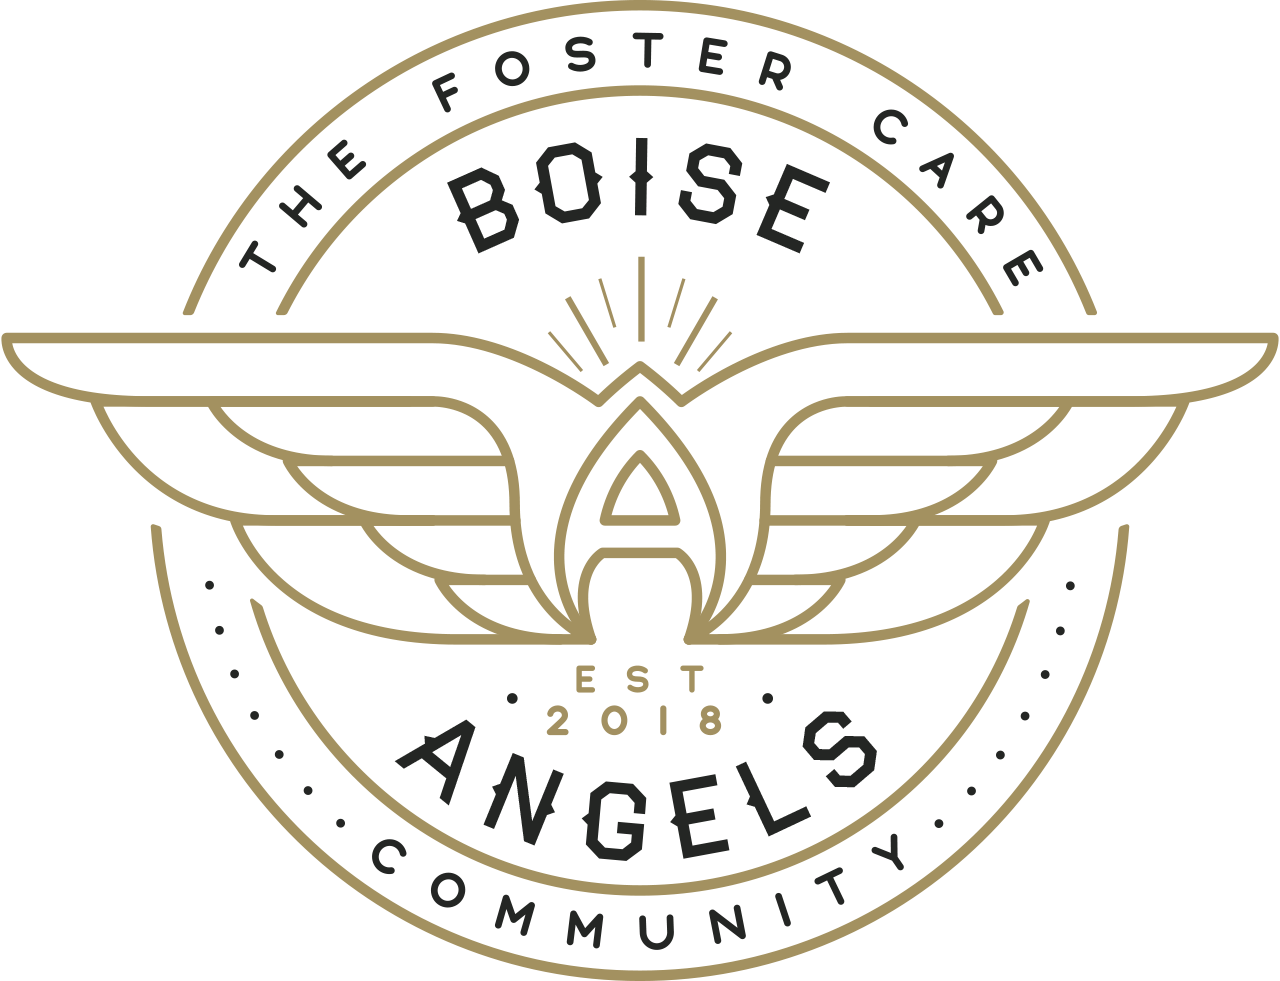 Boise Angels